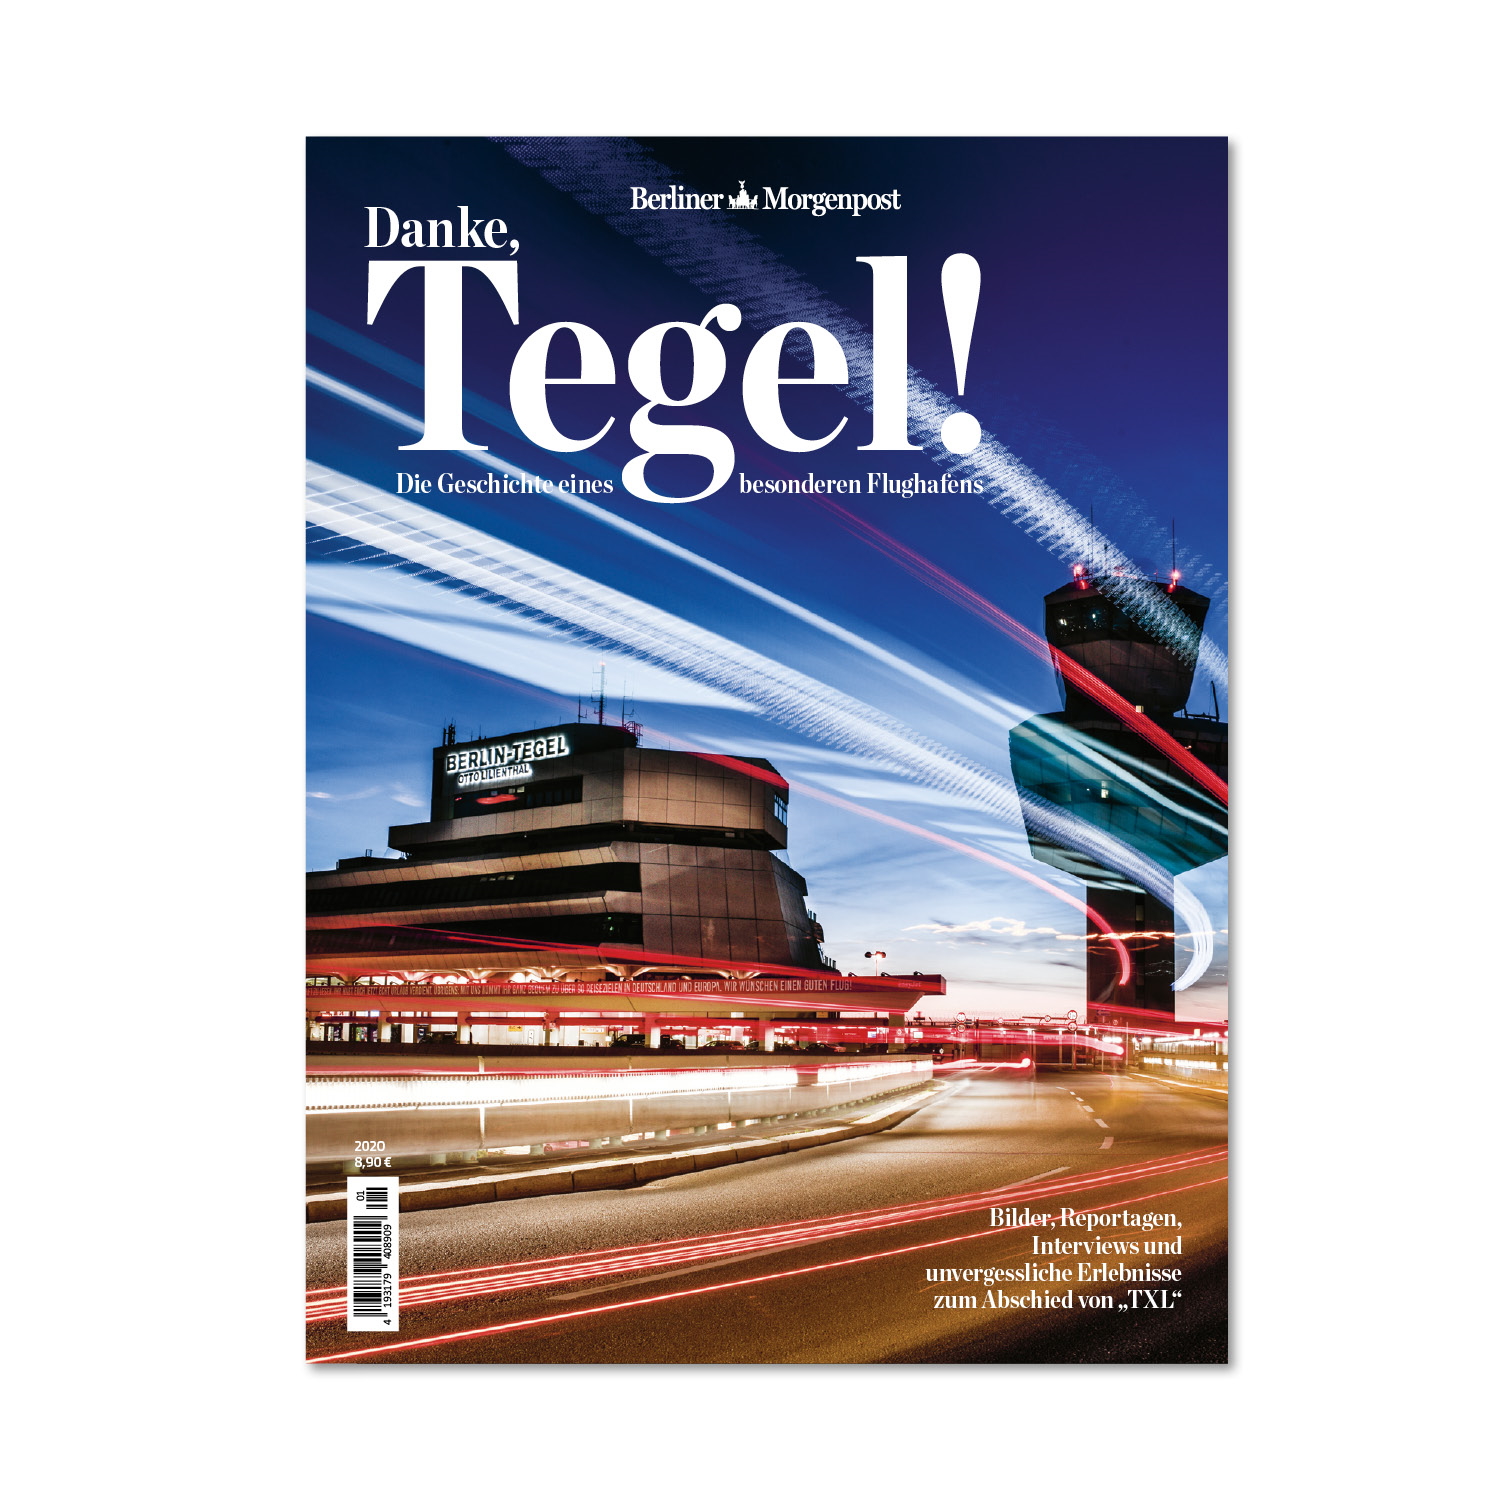 Berliner Morgenpost veröffentlicht Magazin zum Flughafen Tegel